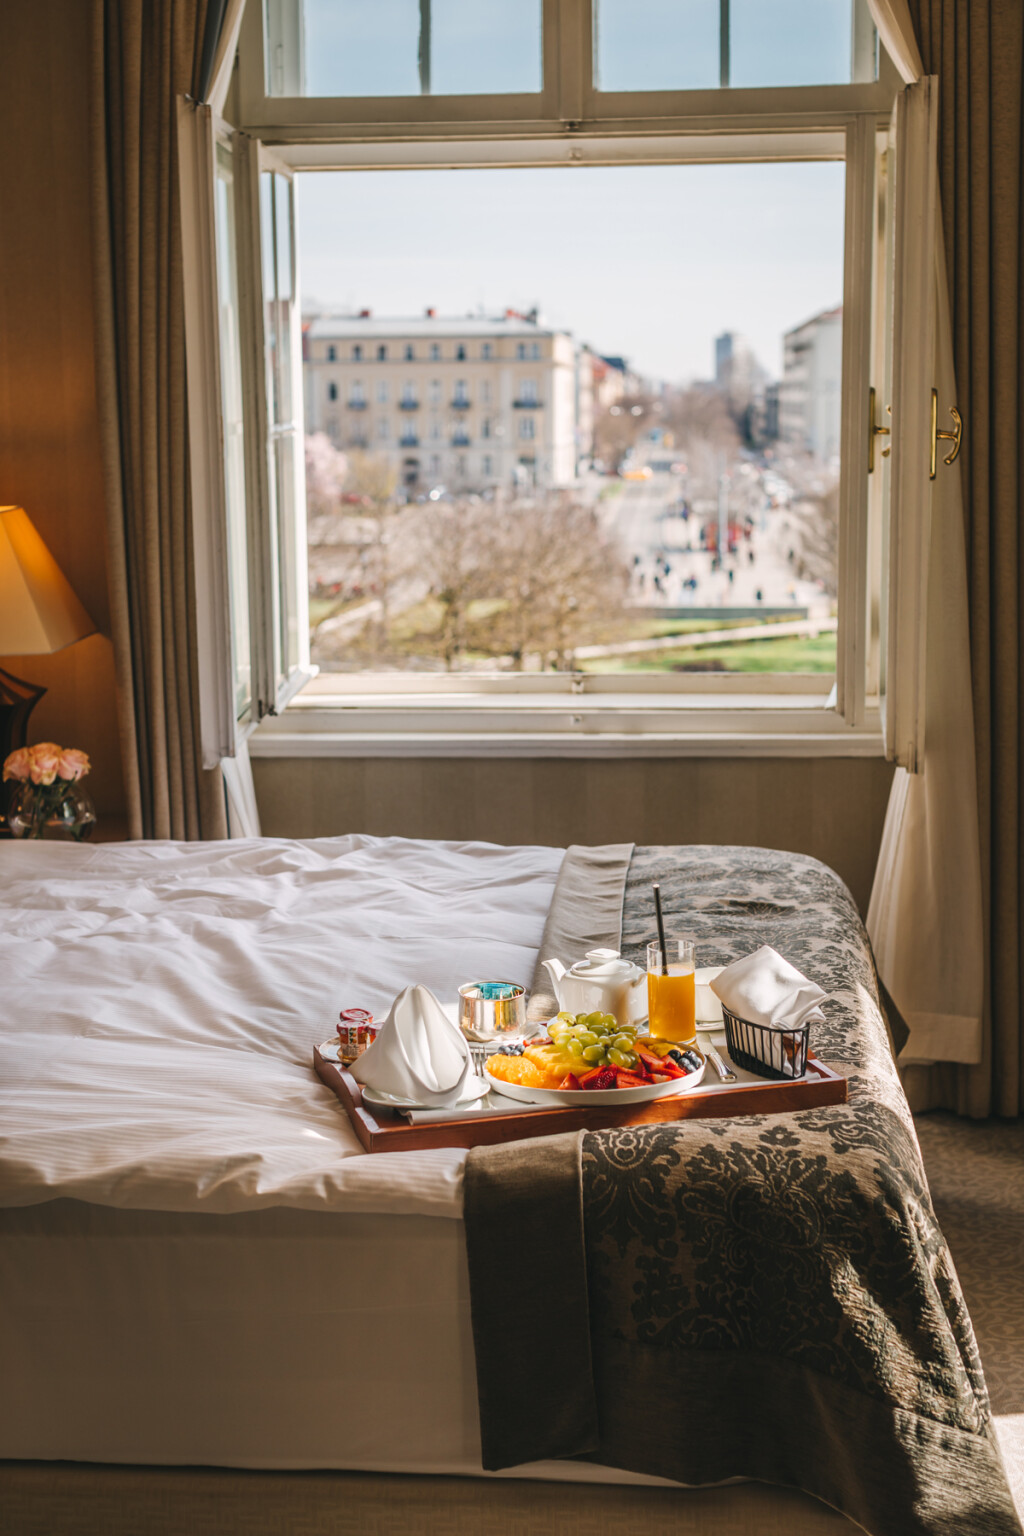 Moguć je i doručak u sobi s predivnim pogledom na Zagreb